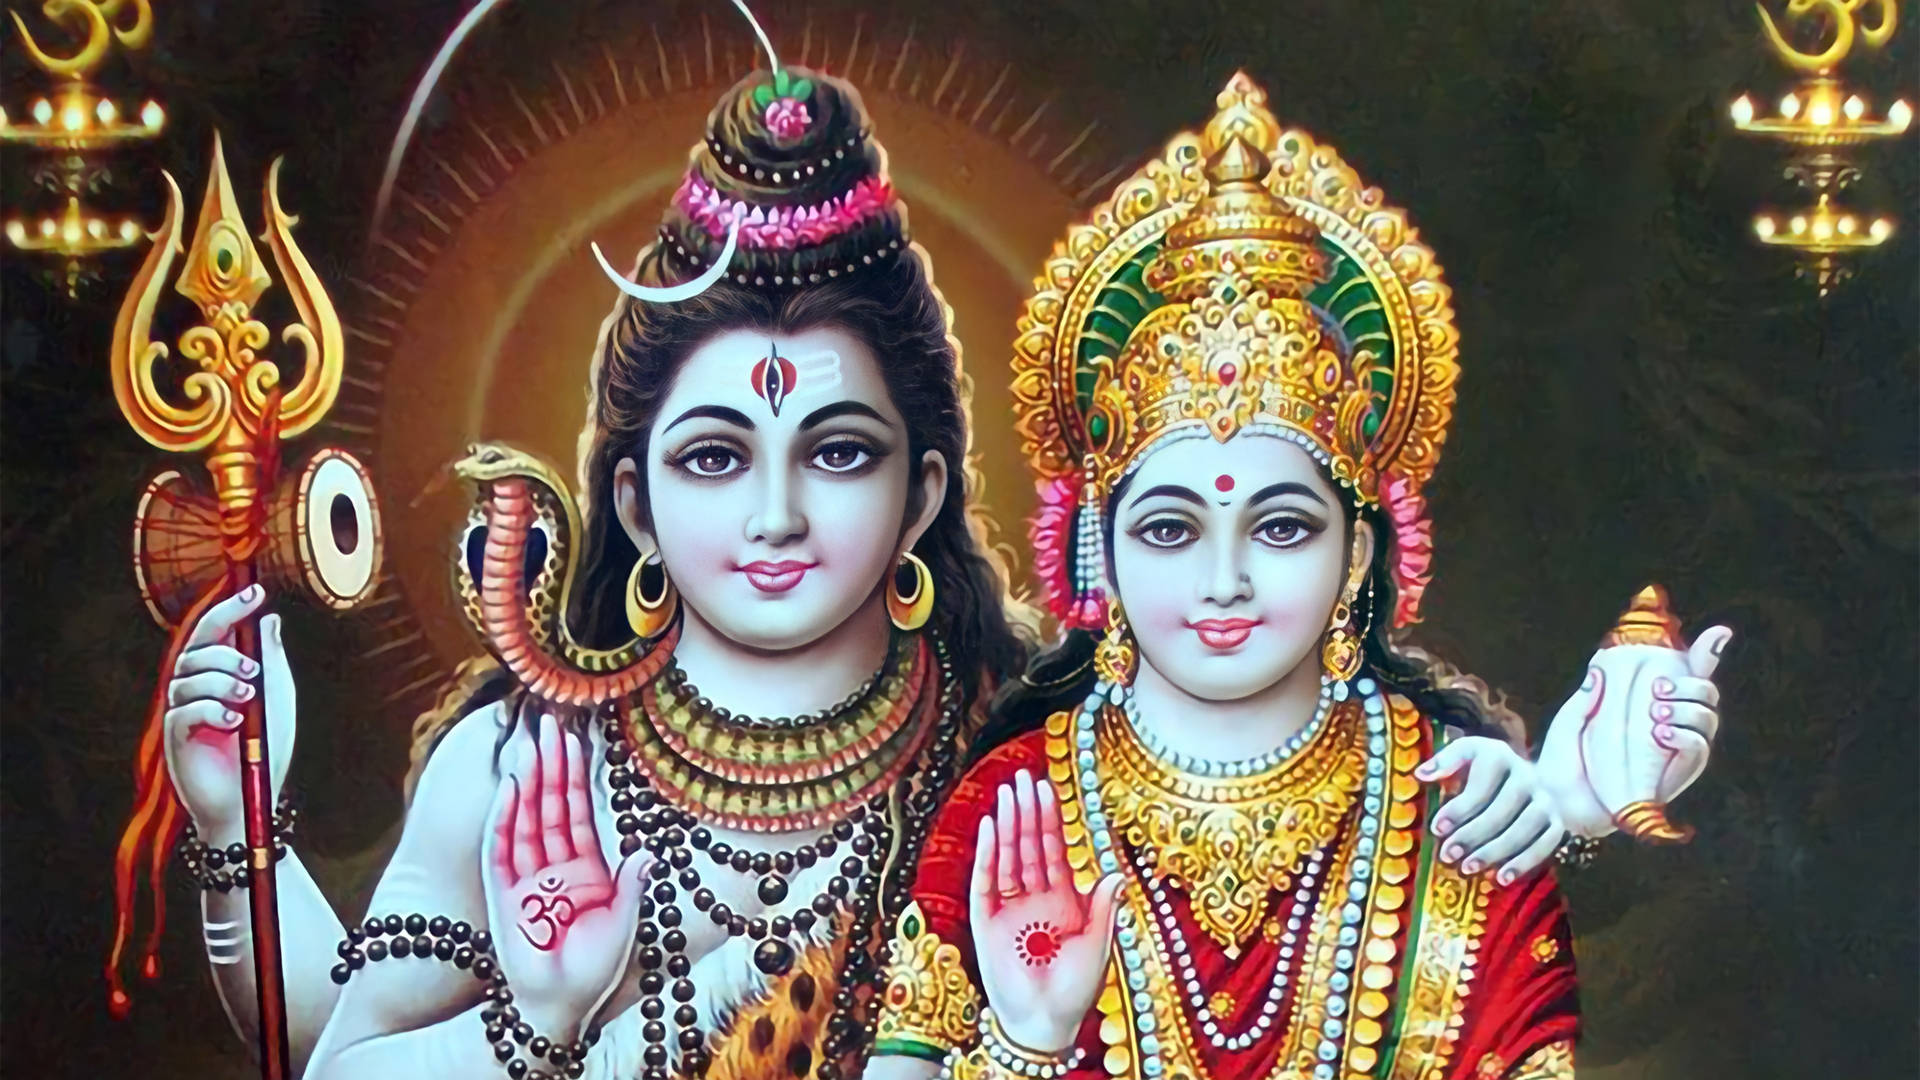 Fondosde Pantalla Hd De Shiv Parvati Con Símbolos Hindúes Y Manos En Posición De Oración Fondo de pantalla